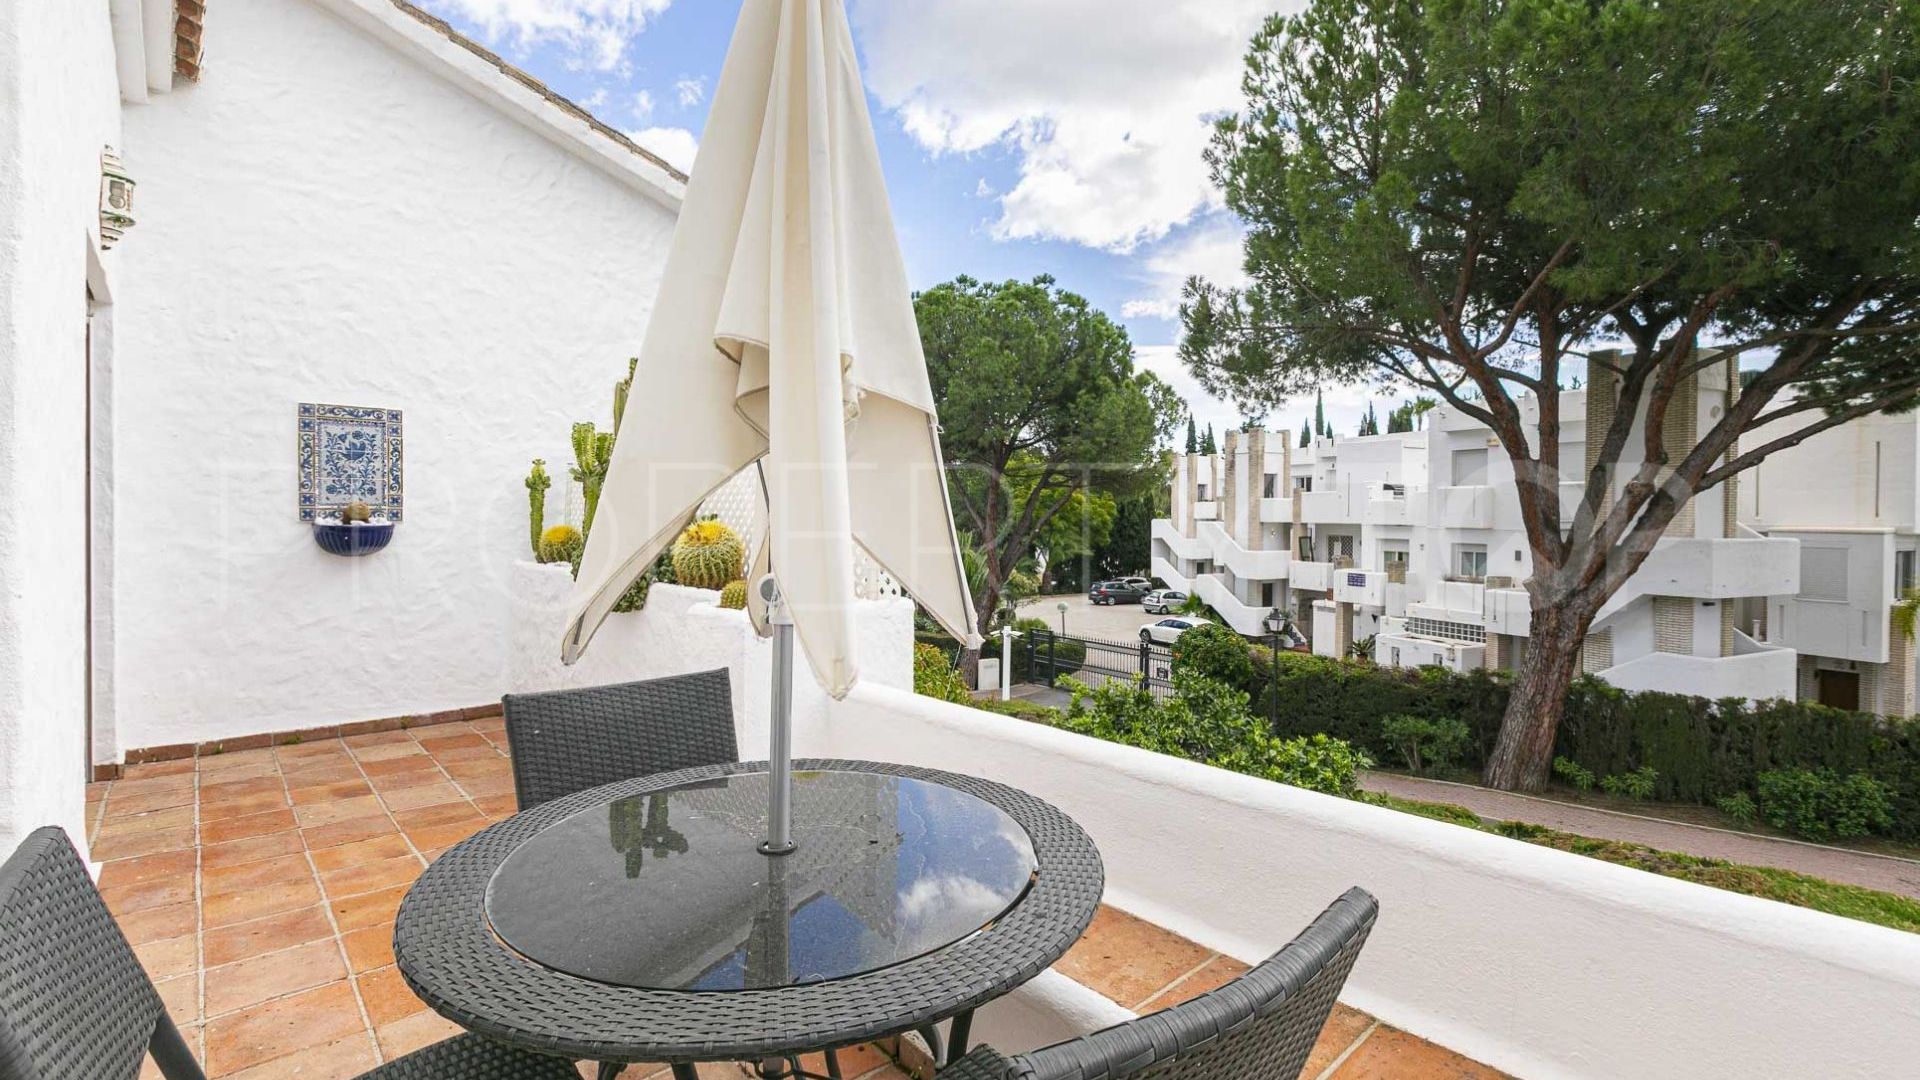 Nueva Andalucia, adosado con 2 dormitorios en venta